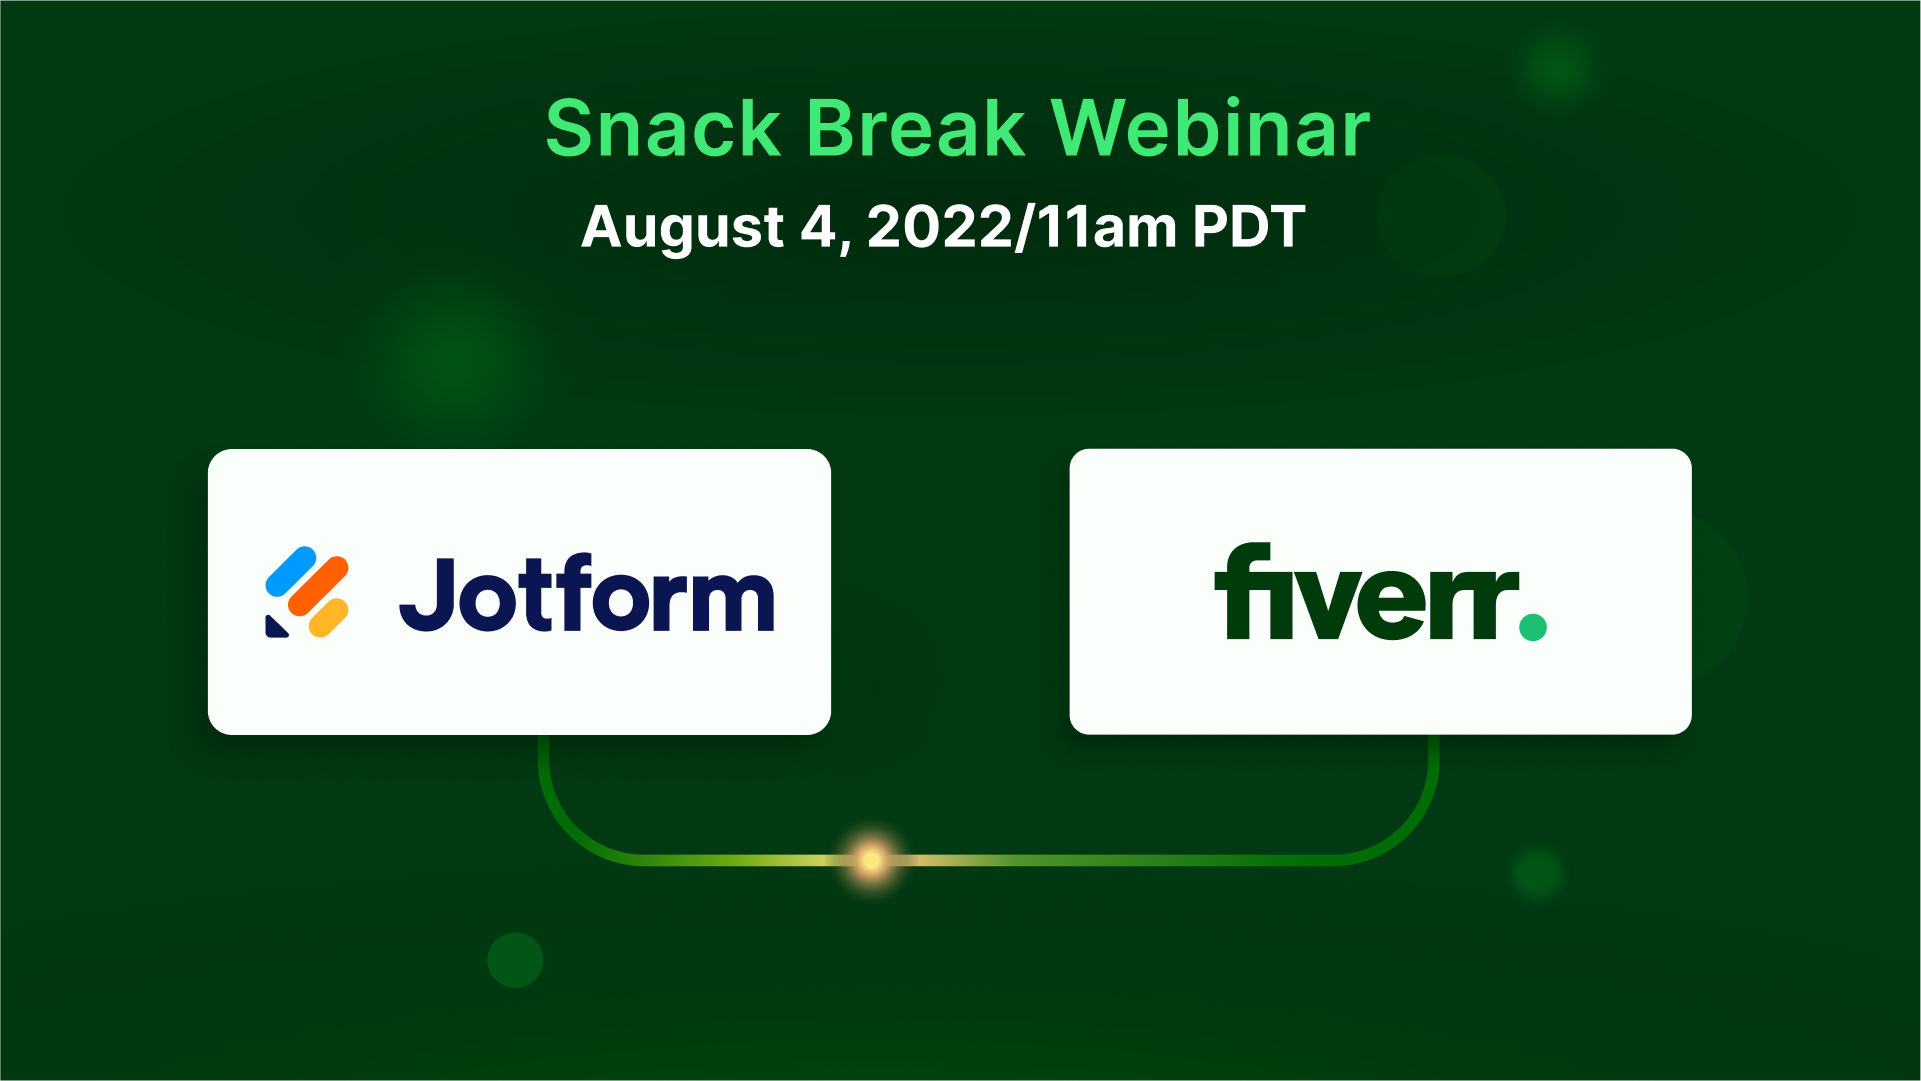 Snack break webinar: See Jotform’s Fiverr widget in action